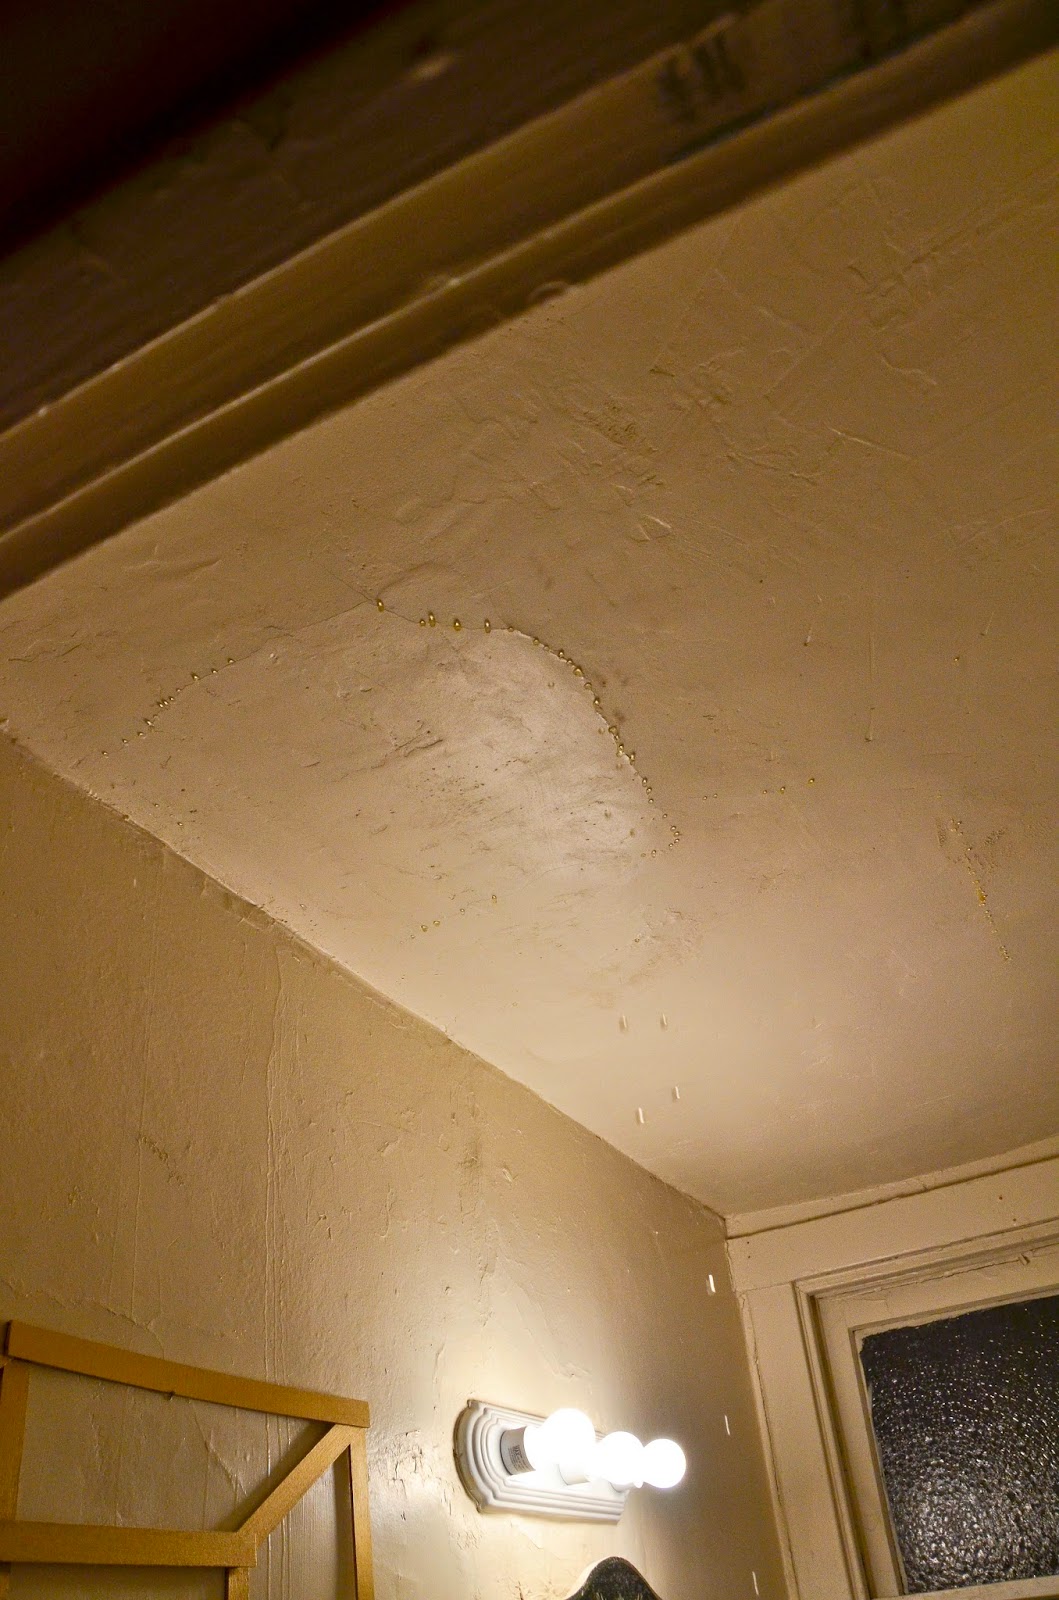 Leaking Bathroom Ceiling November 2014